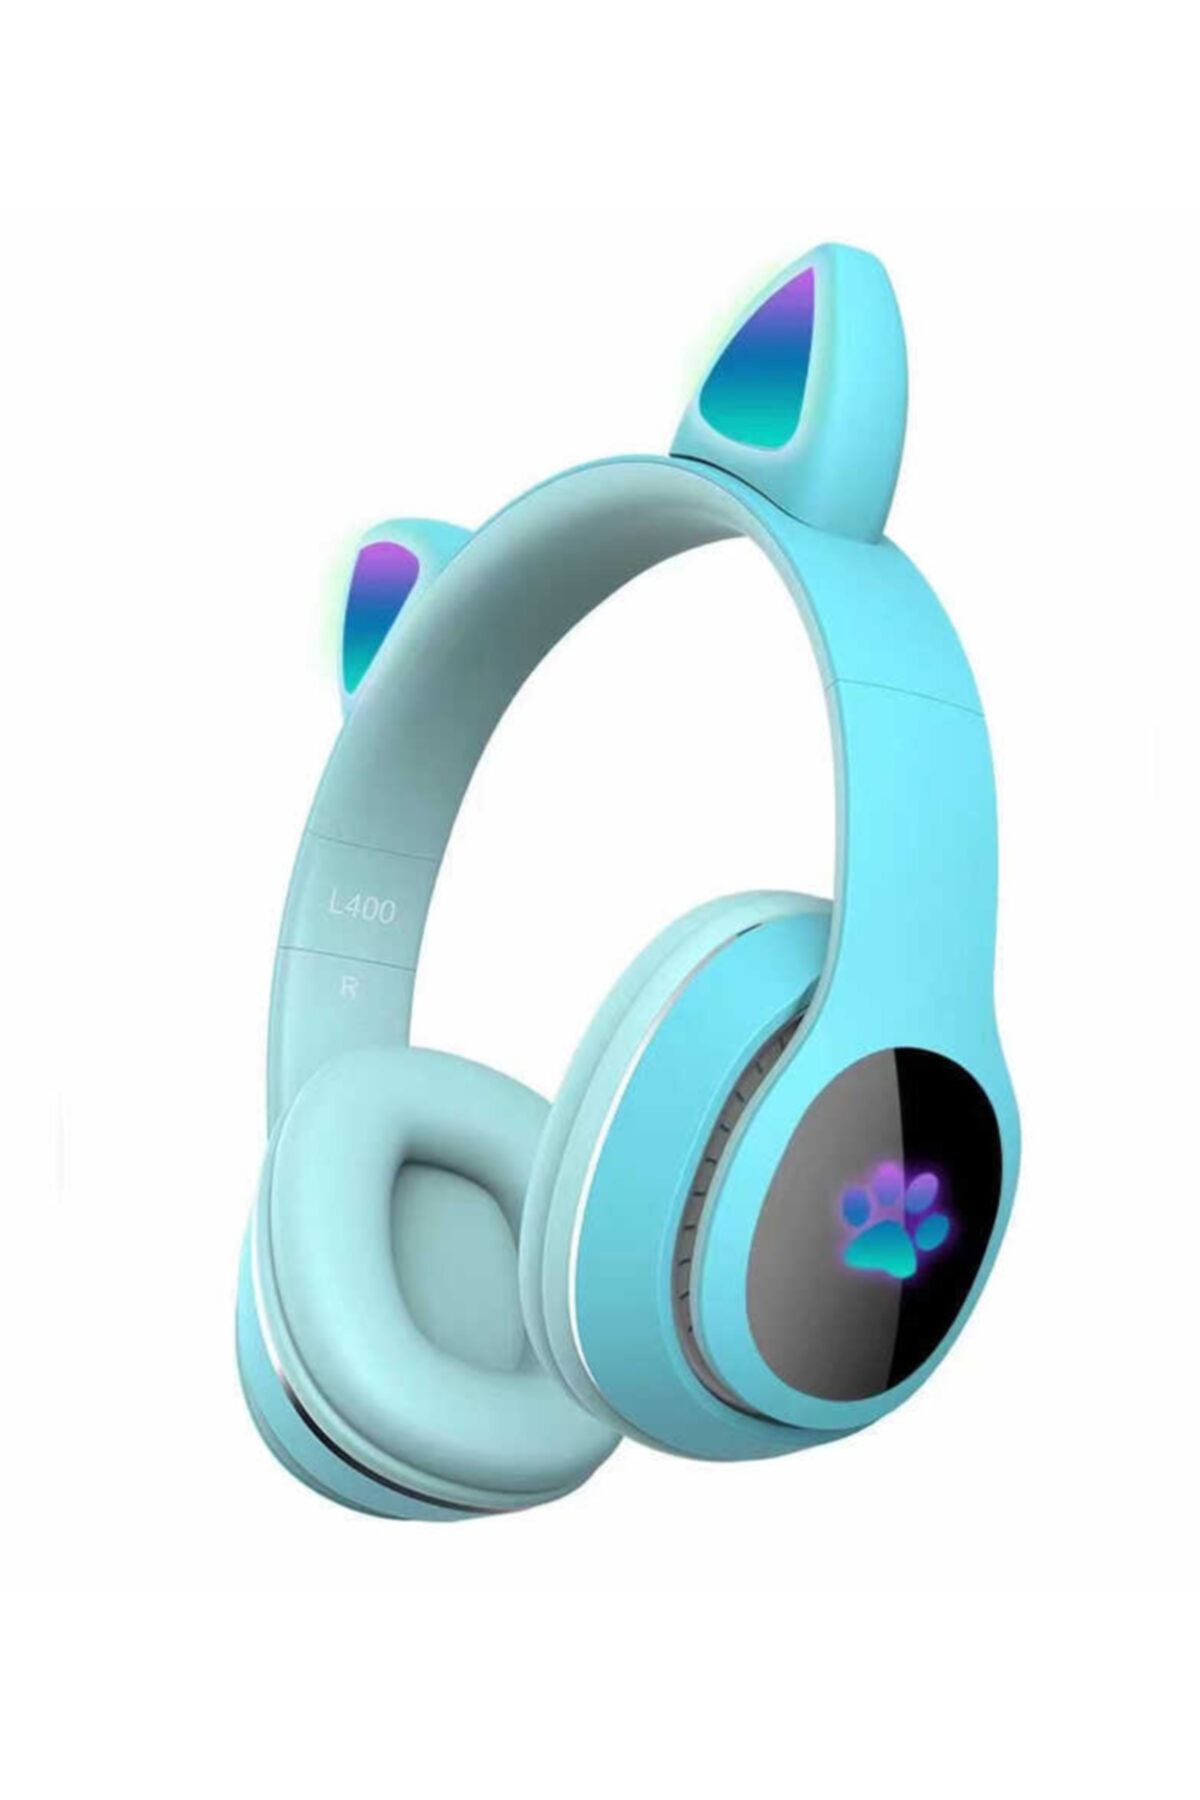 UnDePlus Kulaküstü Bluetooth Uyumlu Kulaklık Rgb Işık Renki Çocuk Kedi L400